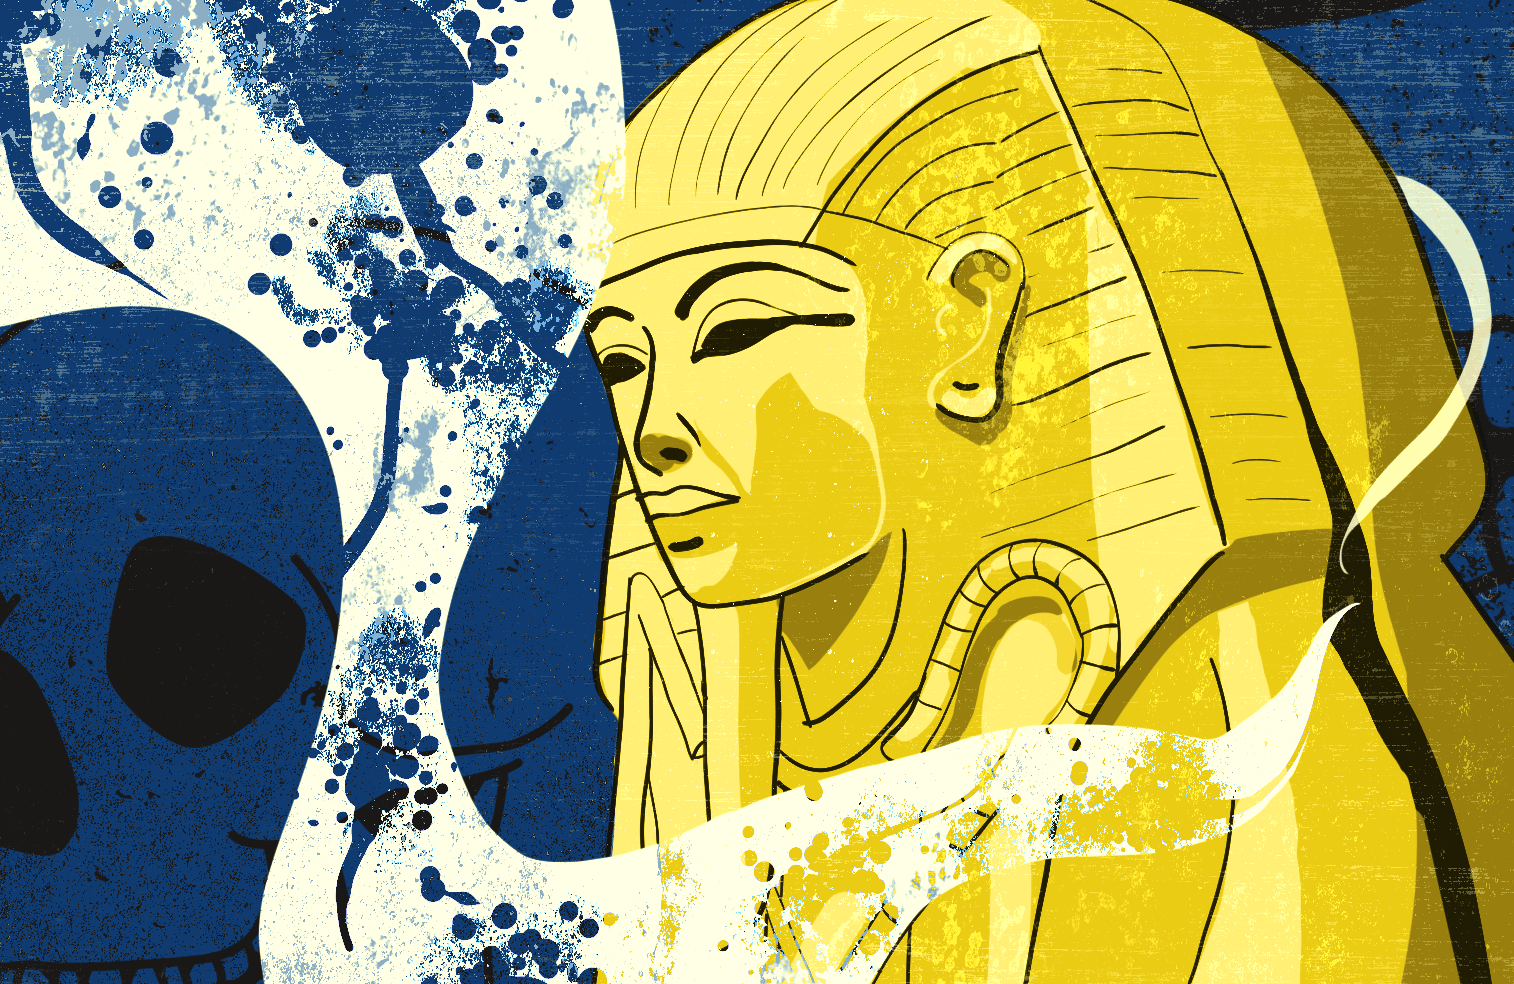 Ilustracja – sarkofag faraona Tutenhamona, z którego wydobywają się opary zawierające zarodniki grzybów, w tle trupie czaszki